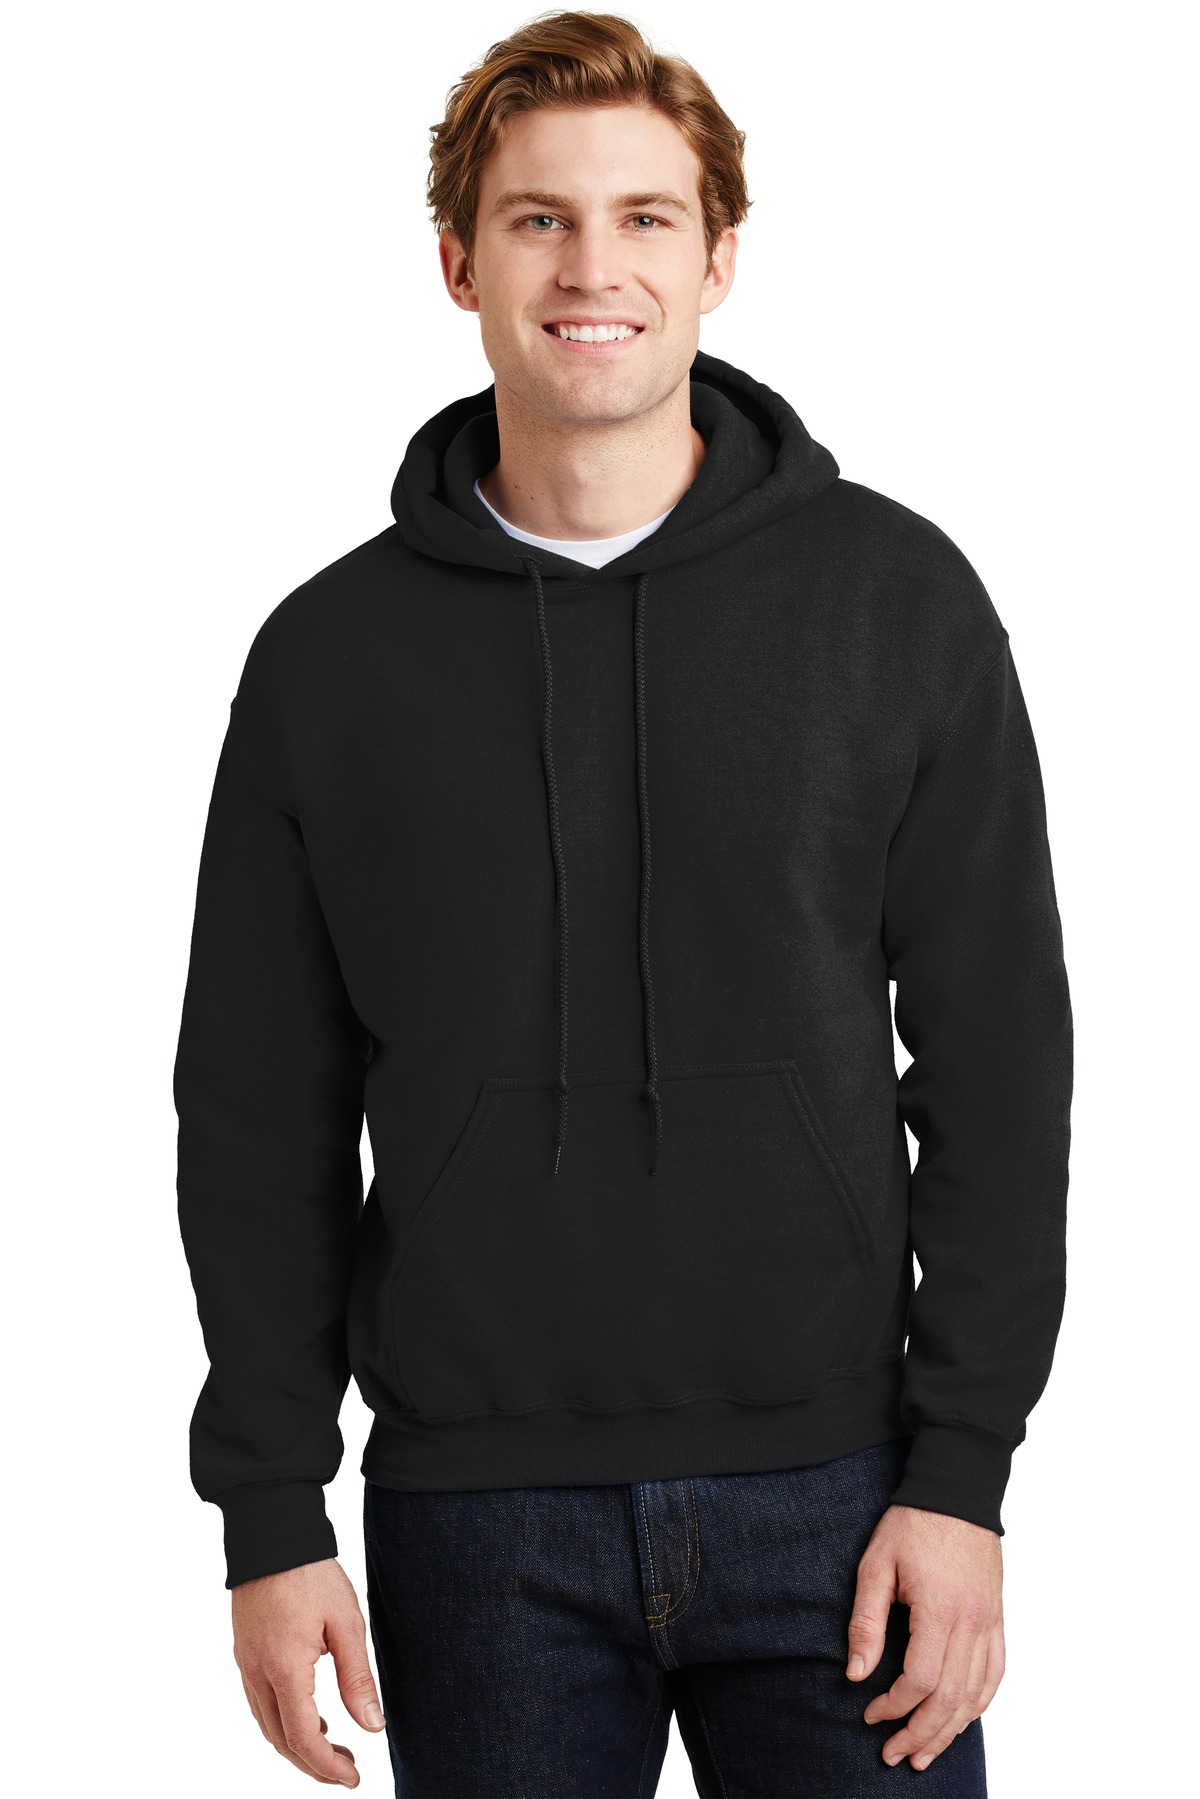 Gildan G185 Adult Hoodie Sweatshirt, Wholesale